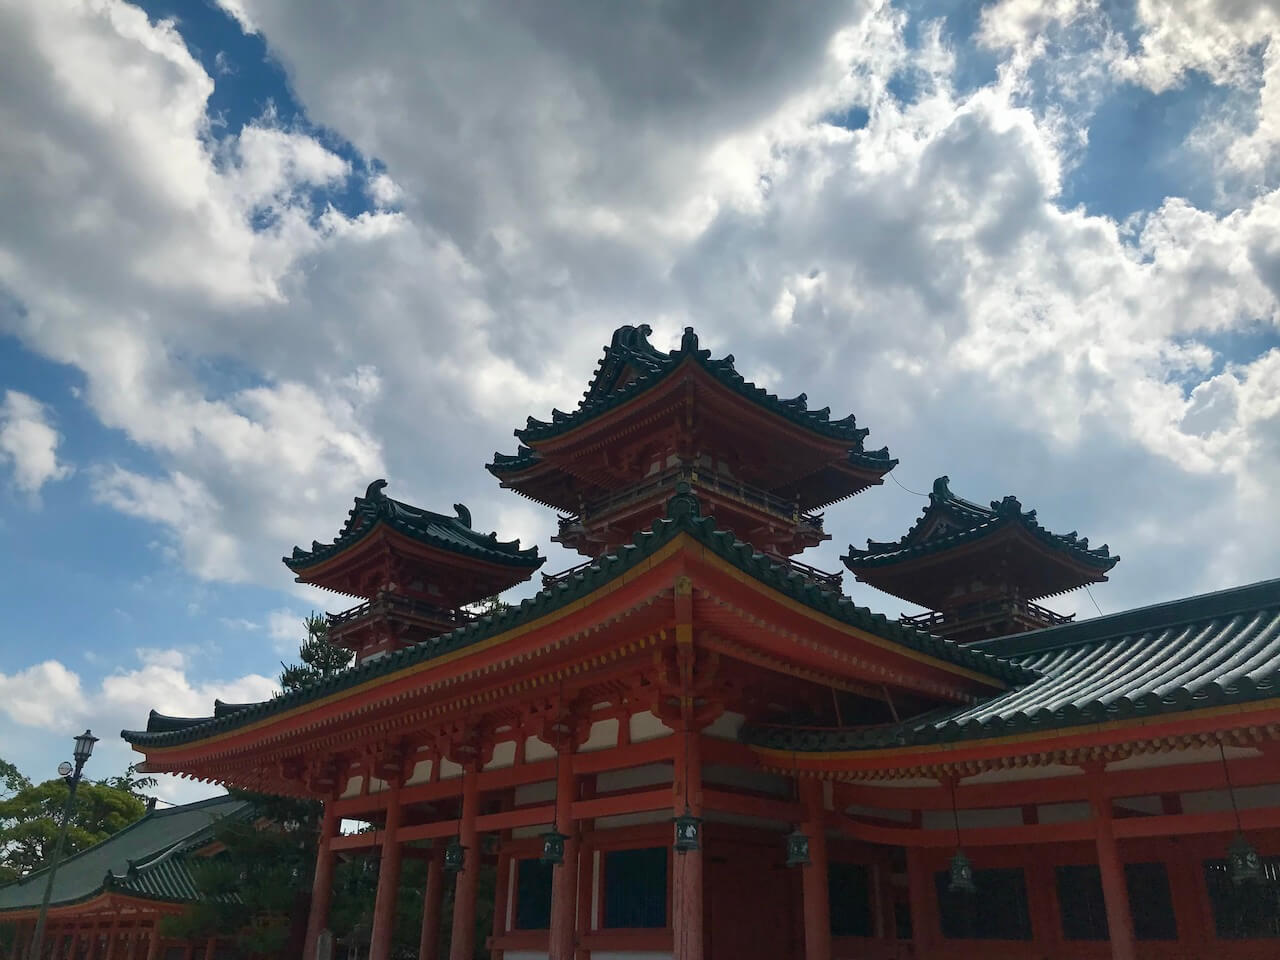 Heian Shrine in Kyoto